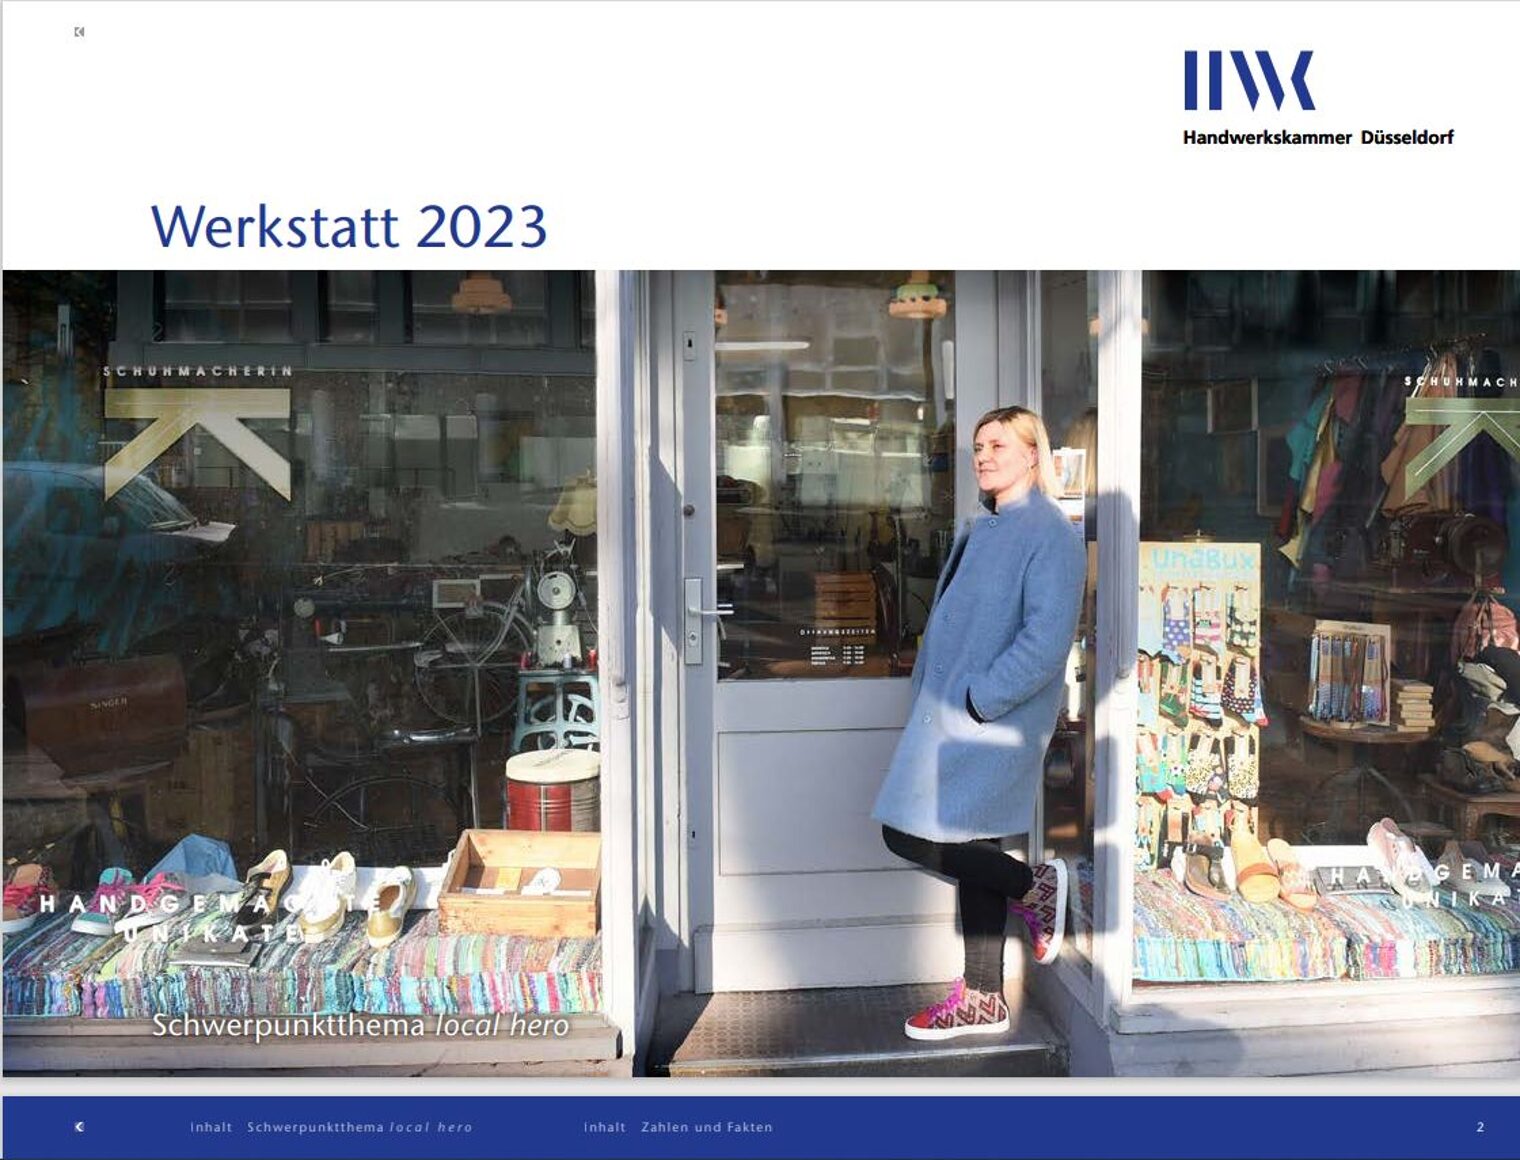 Titelbild des Werkstattberichts 2023. Schuhmacherin Karina Ranft vor Ihrem Geschäft.